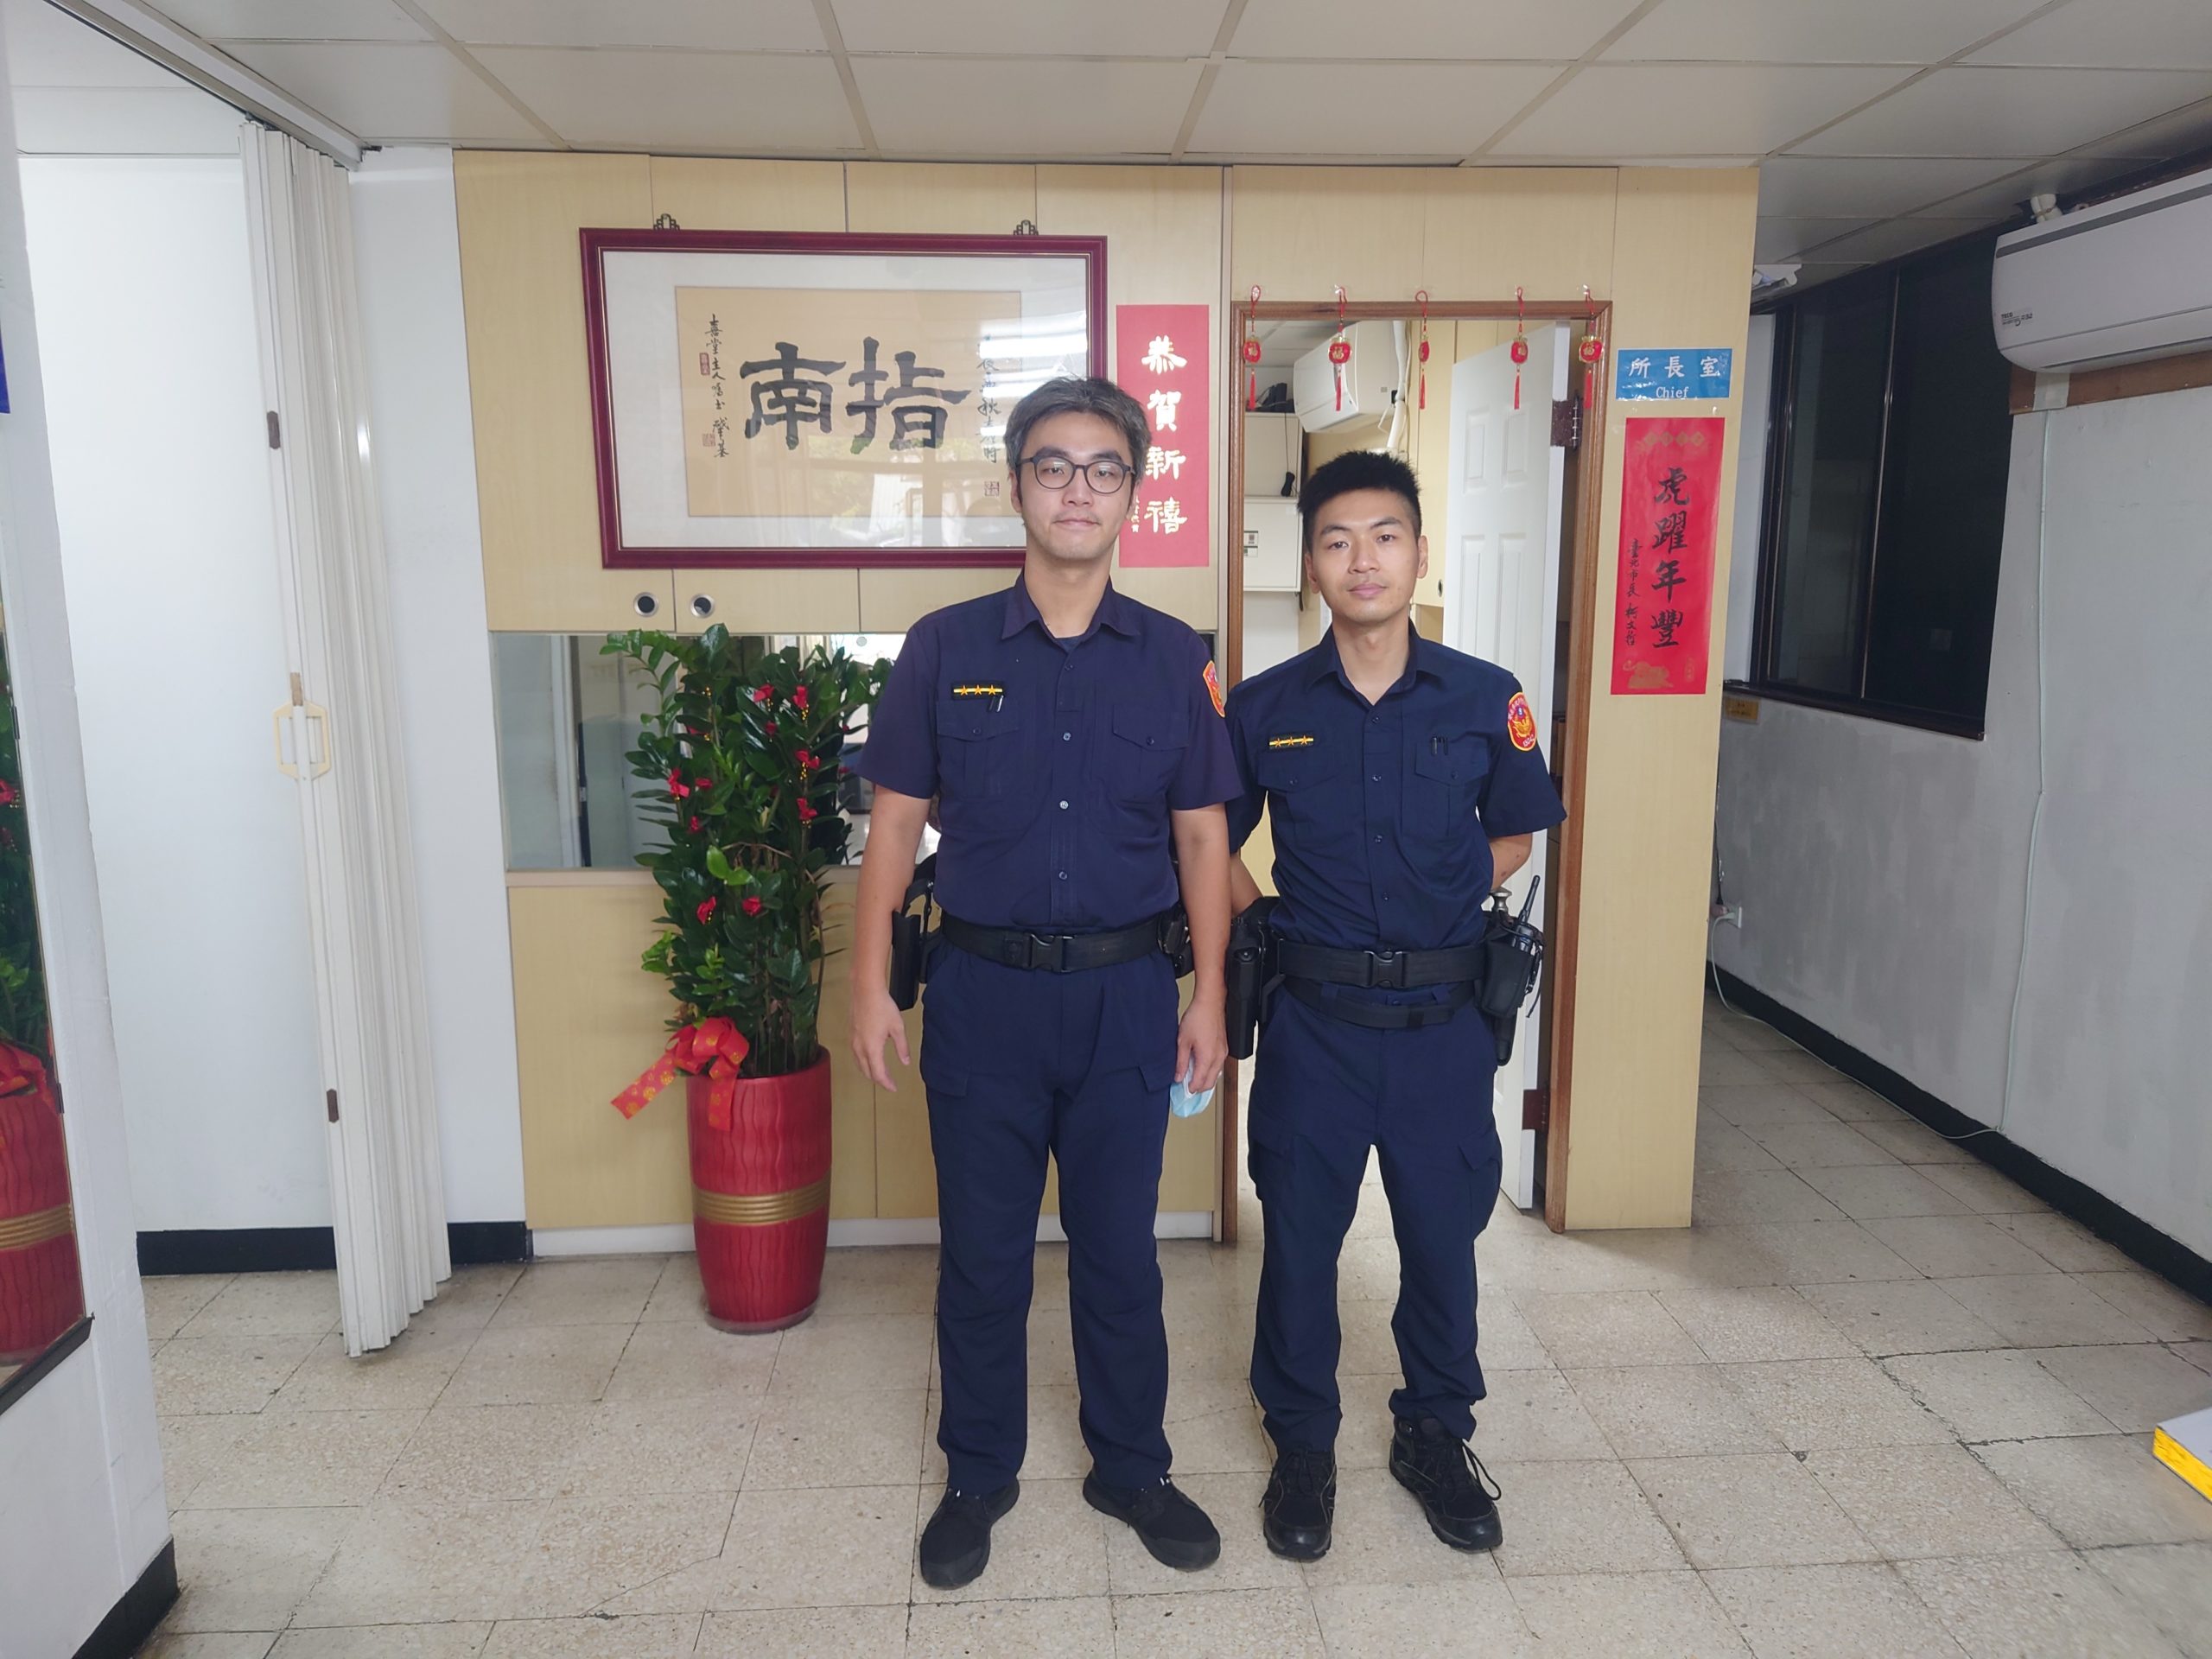 警員龍顗凱(左)、警員鄭宇倫(右)